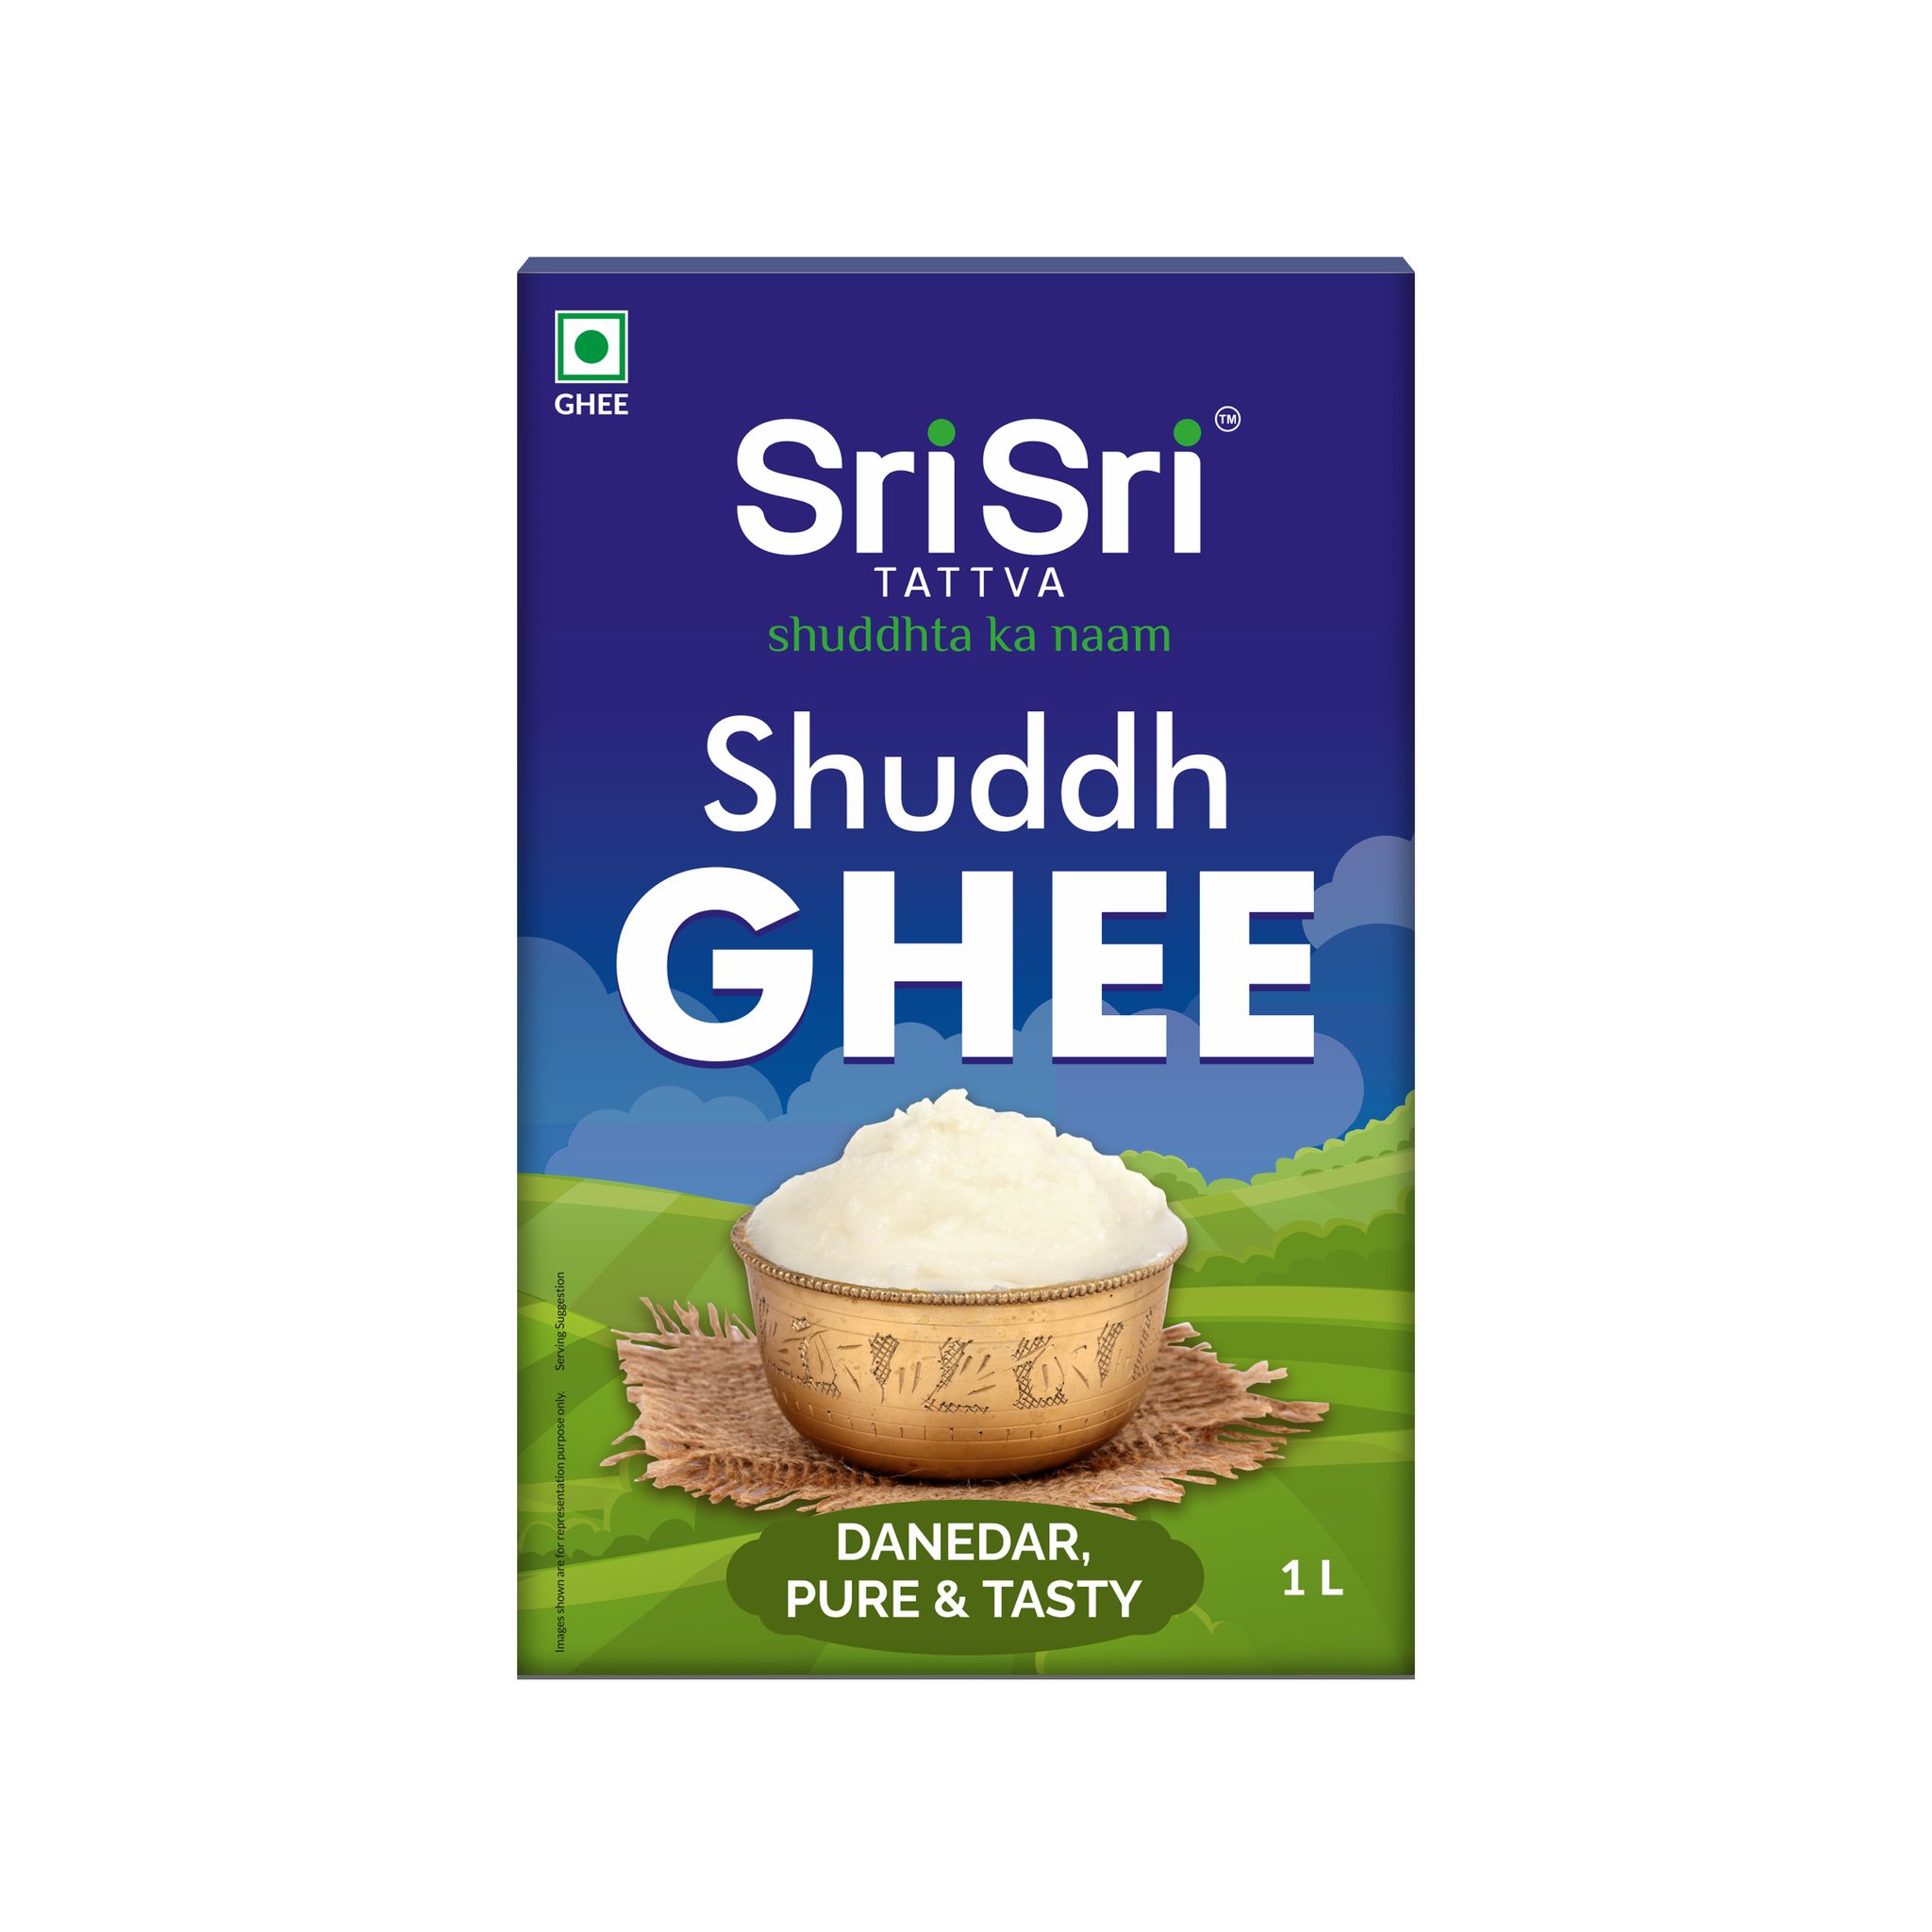 Sri Sri Tattva Shuddh Ghee - Danedar, Pure & Tasty, 1 L